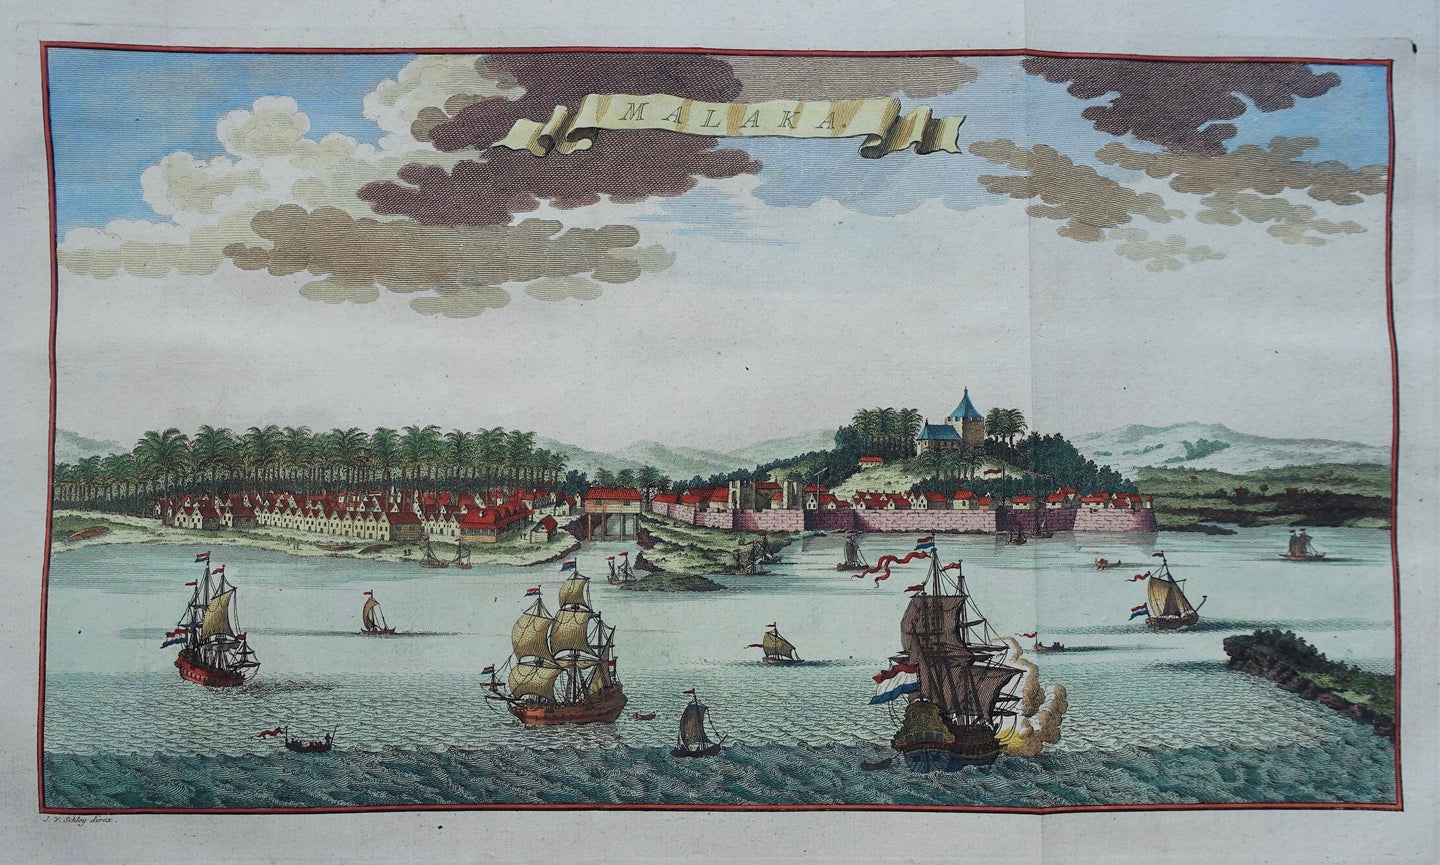 Maleisië Malakka Malaysia Malacca City - J van der Schley / P de Hondt - 1763